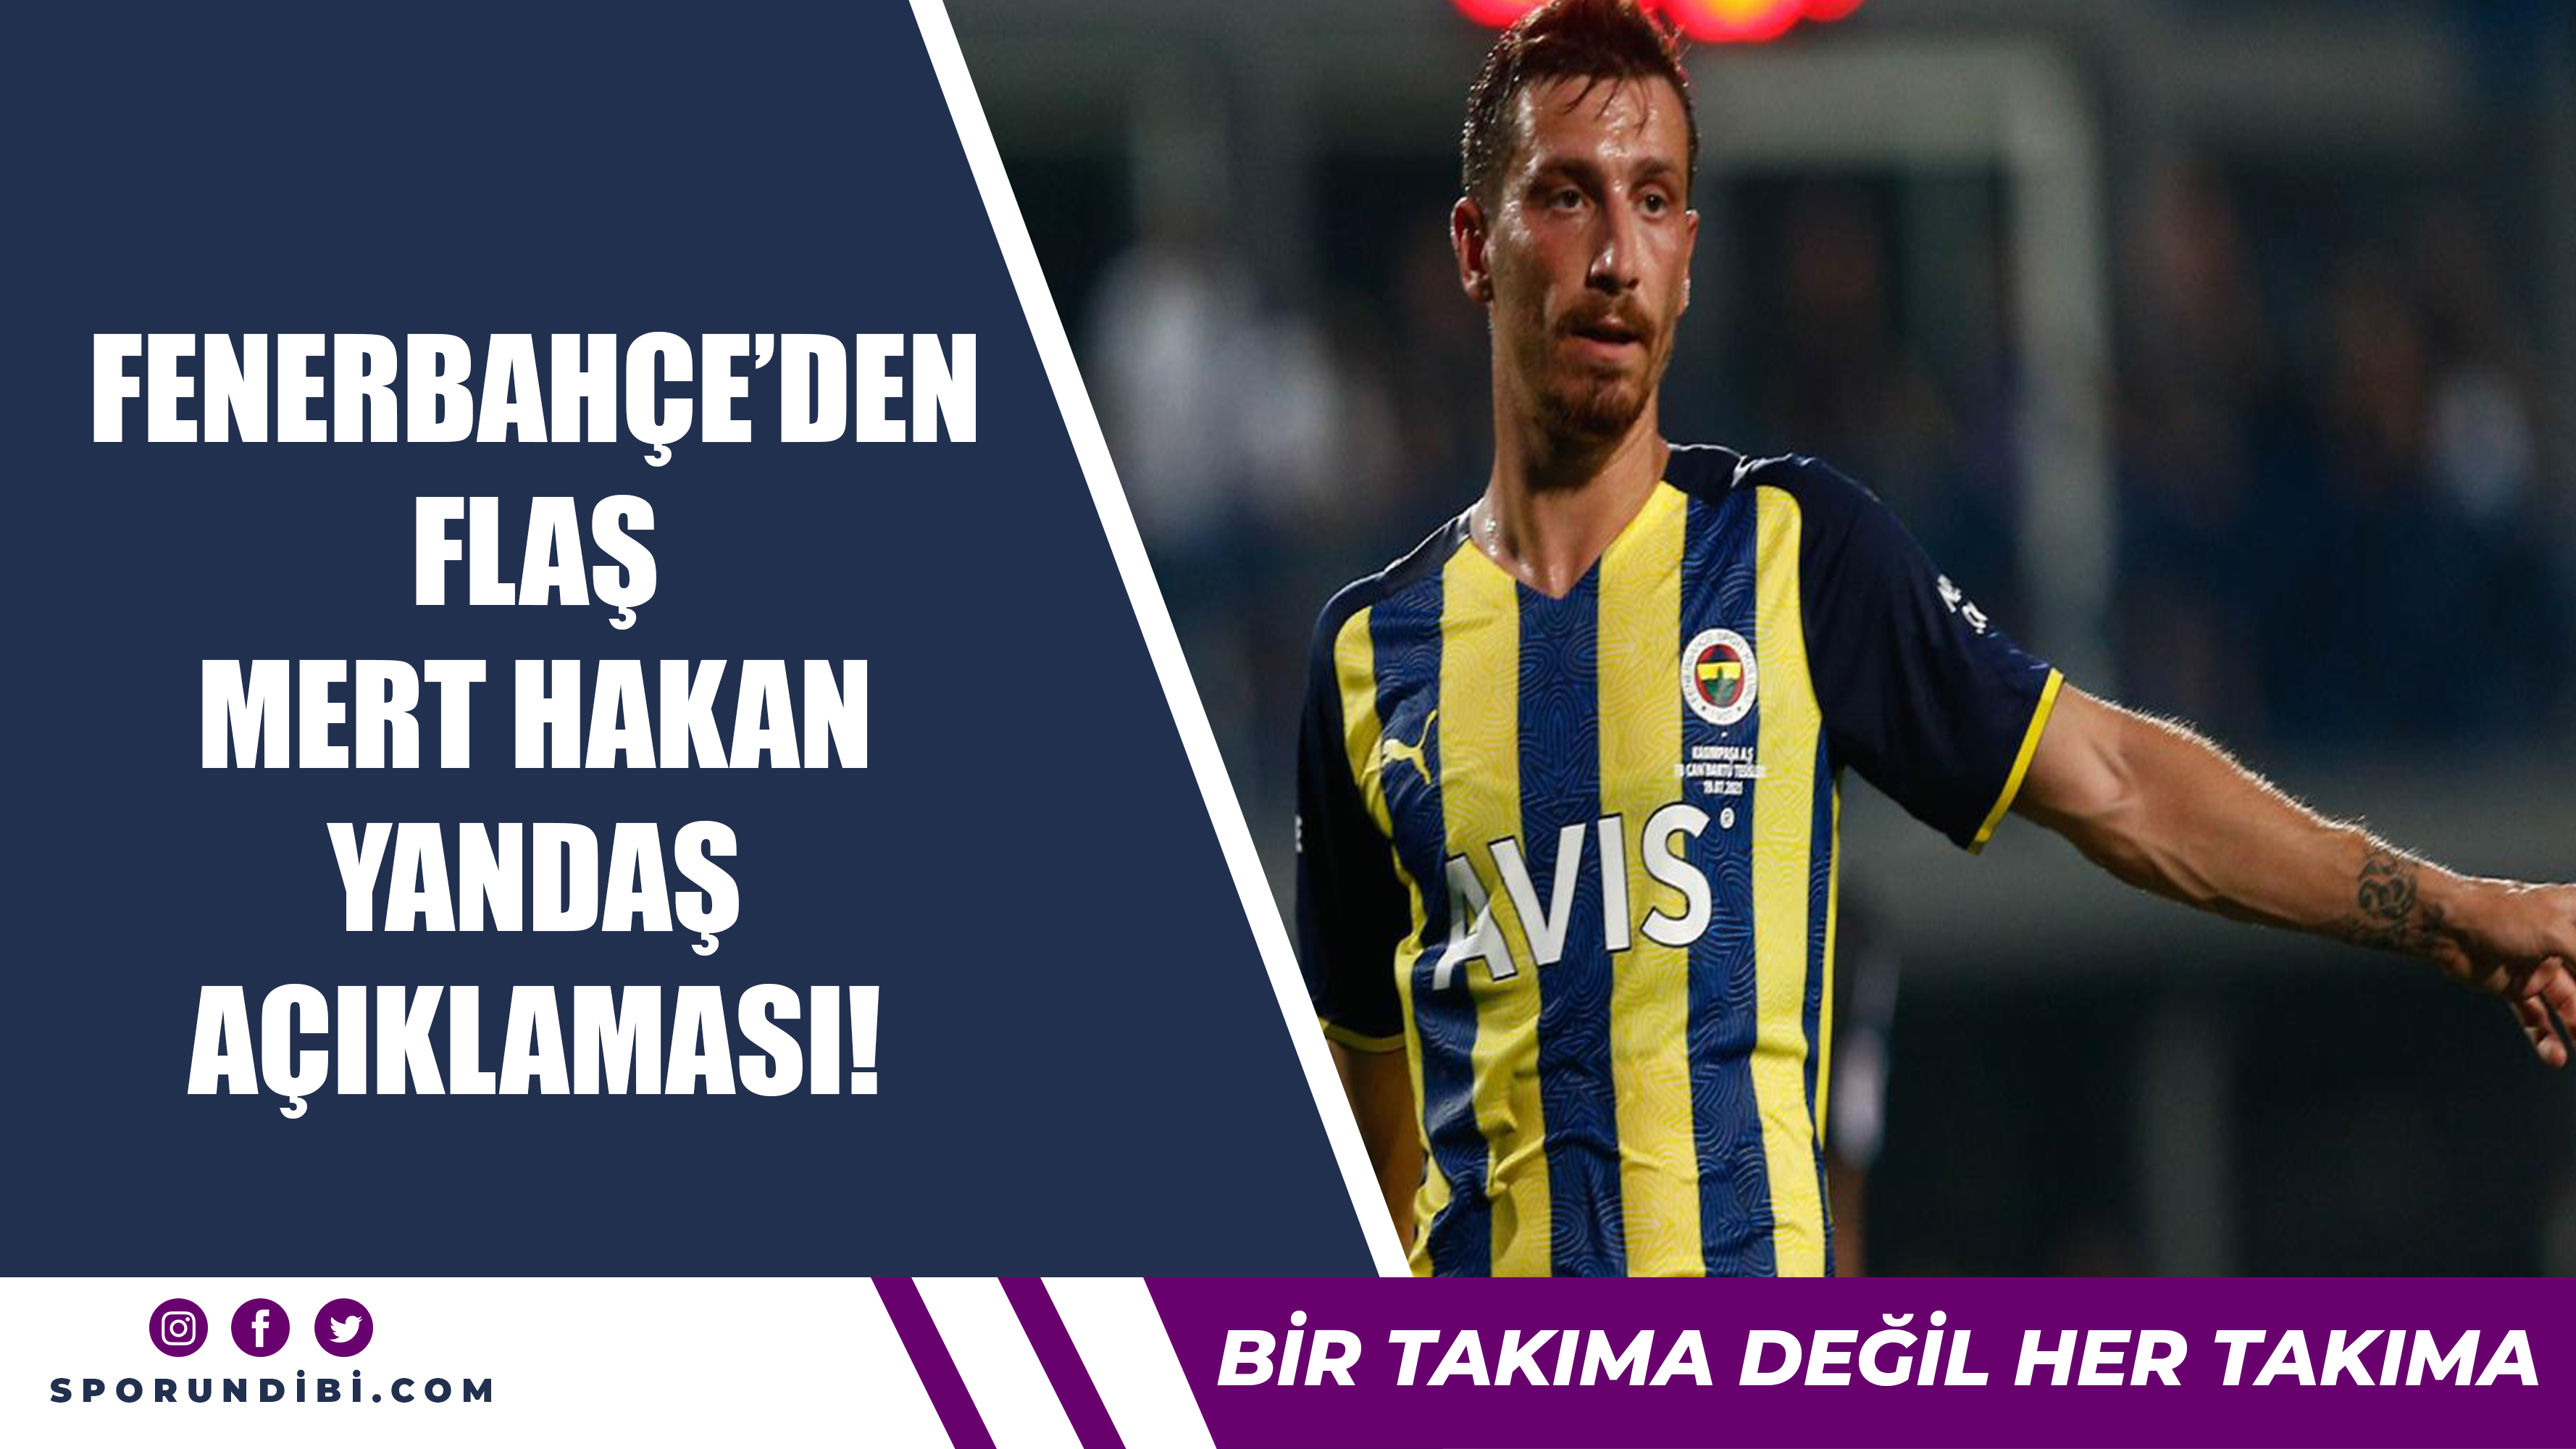 Fenerbahçe'den flaş Mert Hakan Yandaş açıklaması!